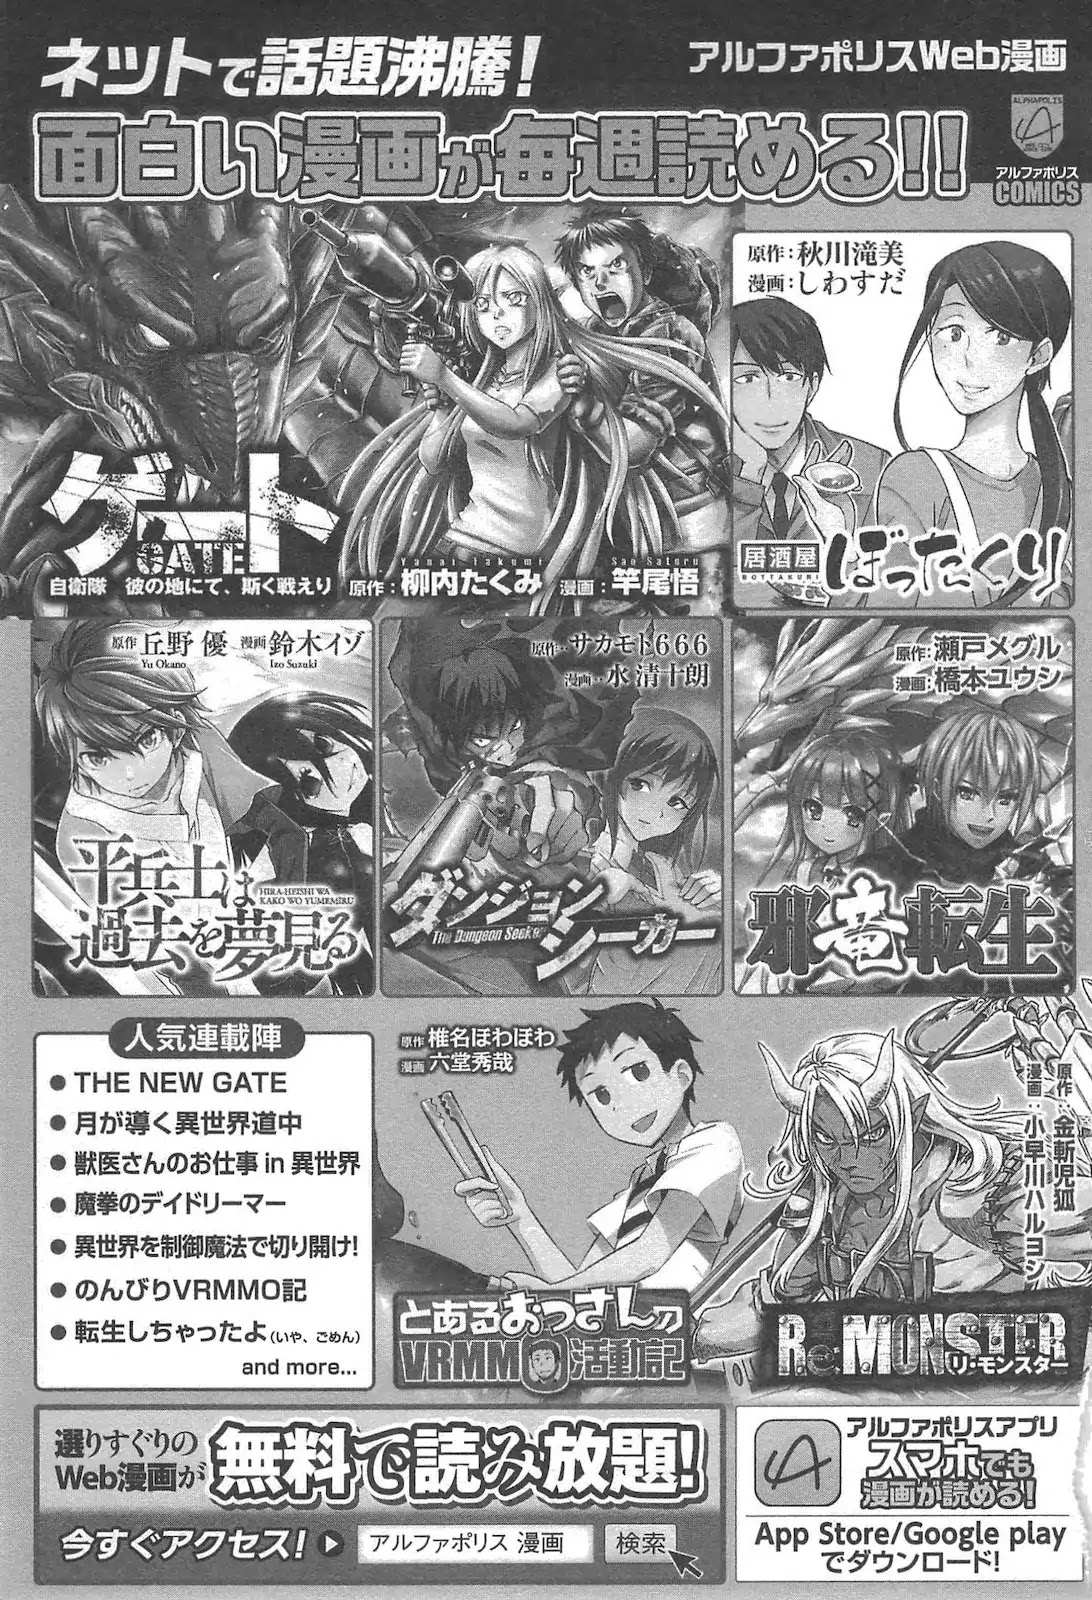 Read The New Gate Chapter 5 Mangabuddy